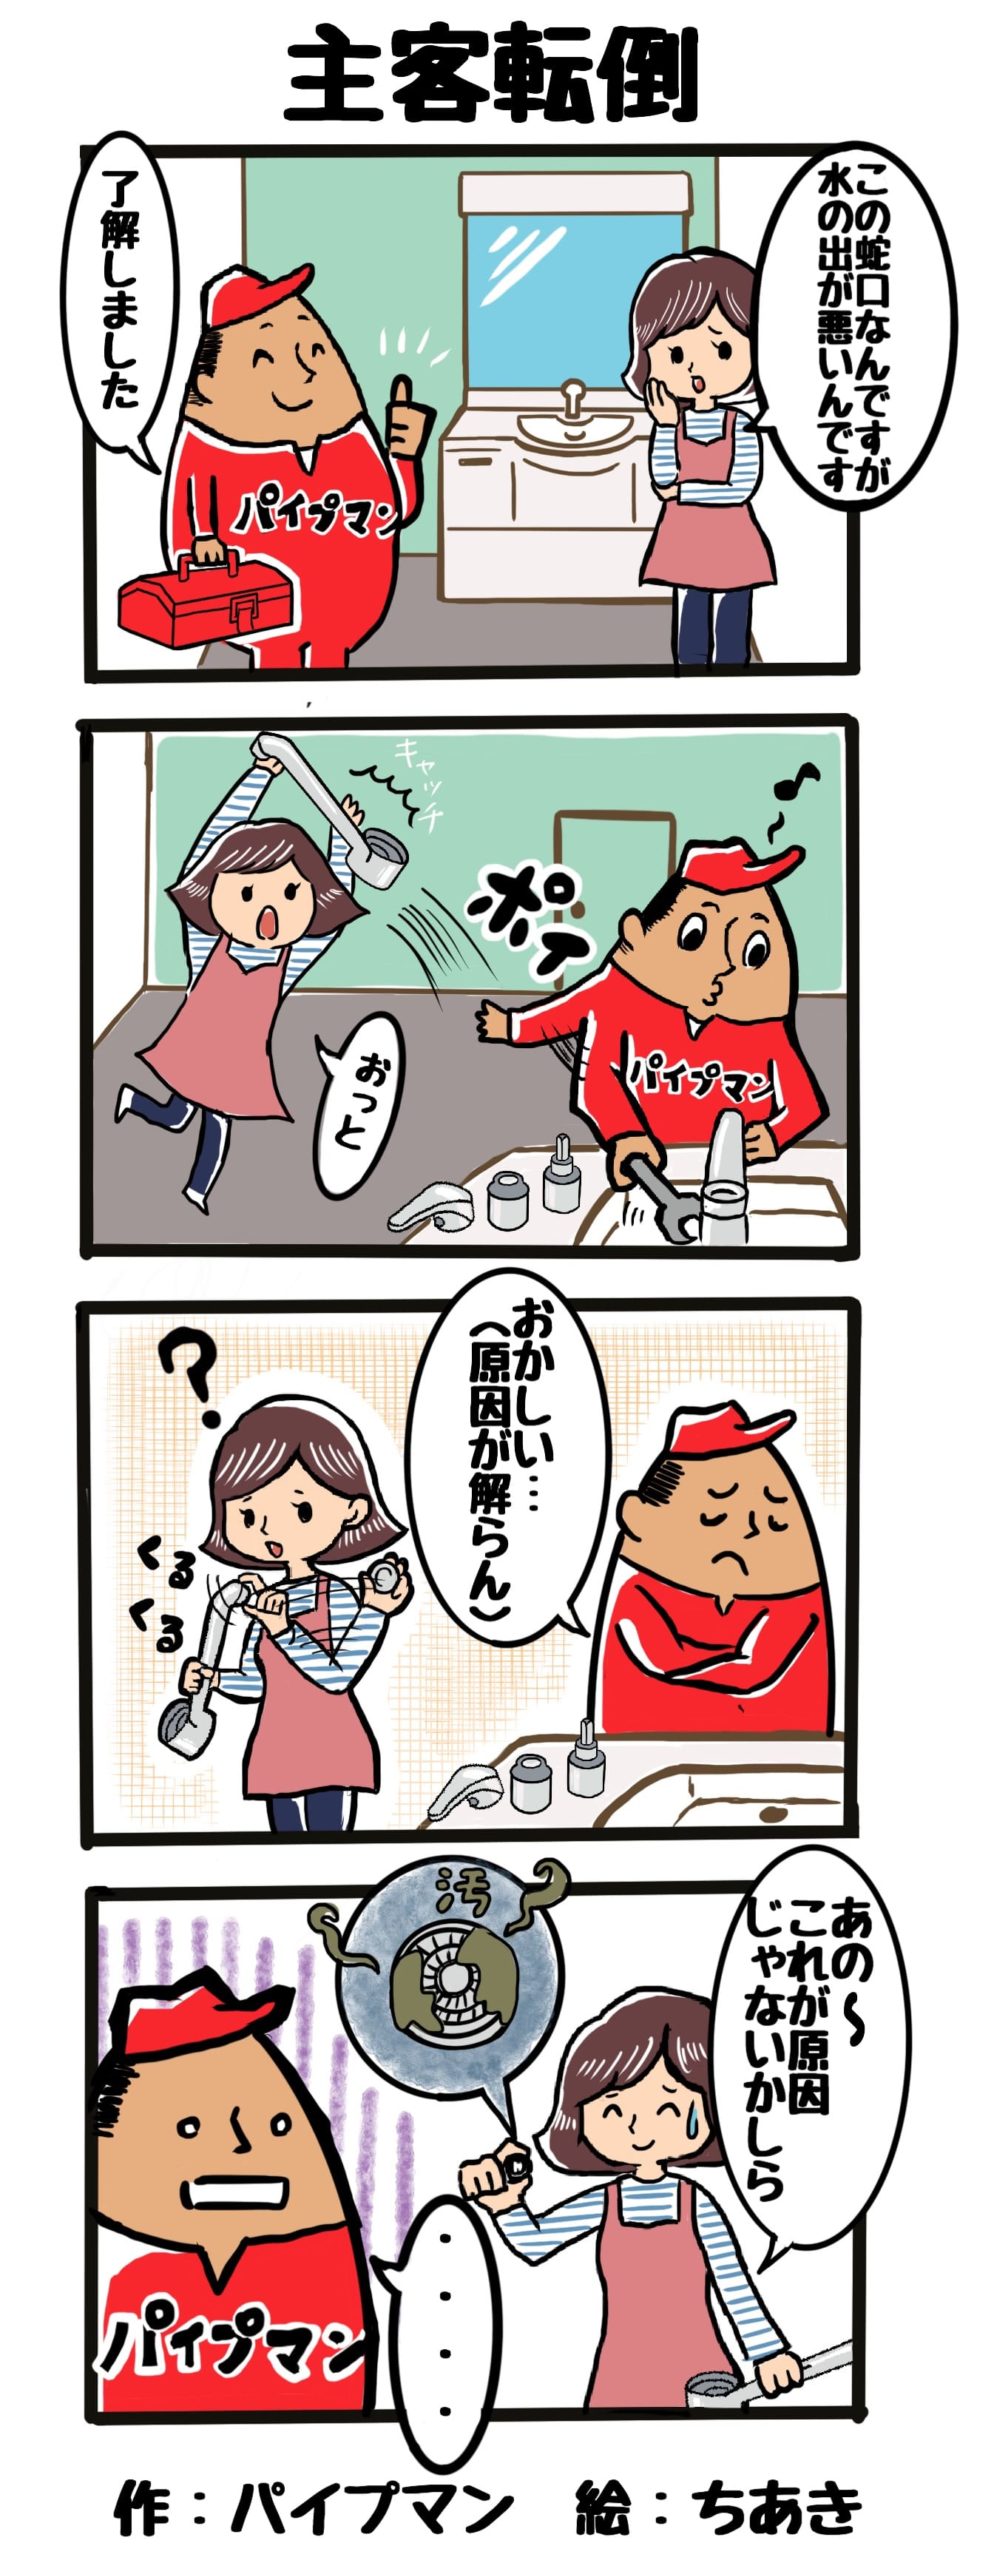 パイプマン漫画第11話